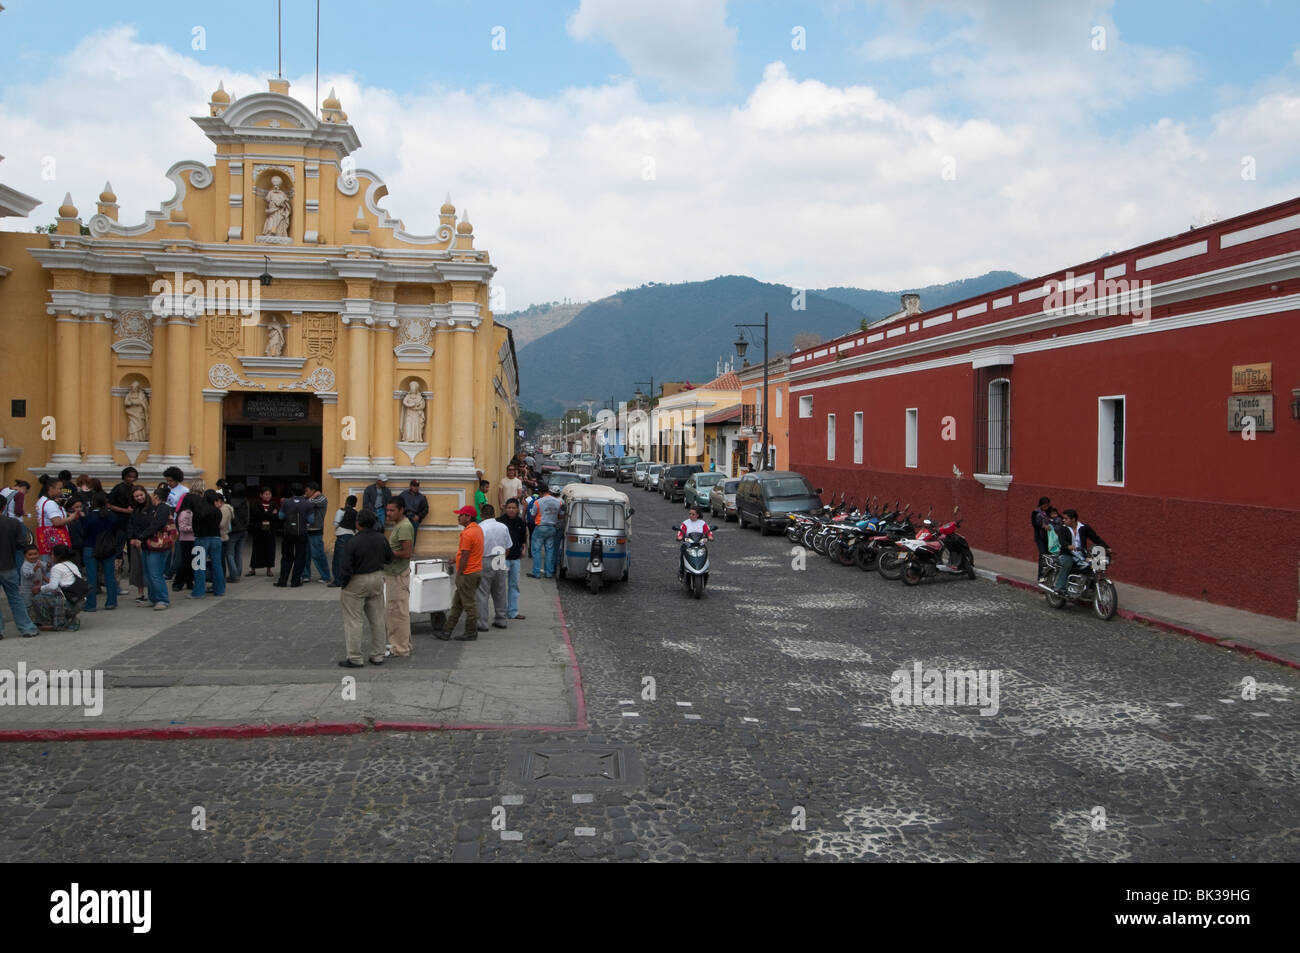 Hermano Pedro church, Antigua, Guatemala, Central America Stock Photo